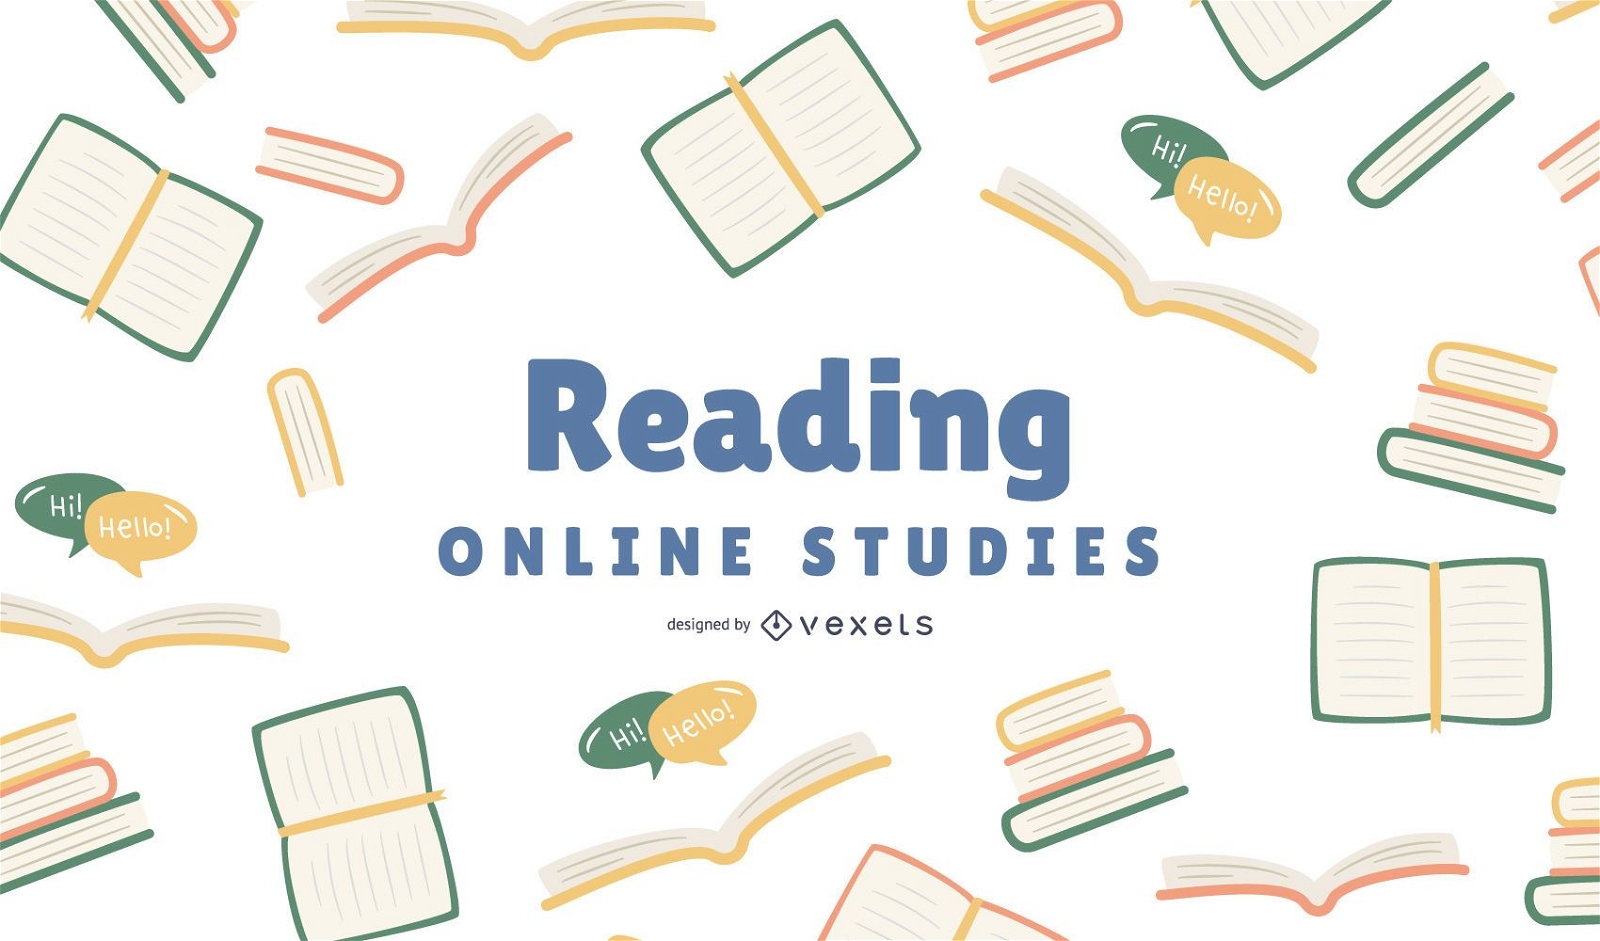 Descarga Vector De Diseño De Portada De Reading Online Studies